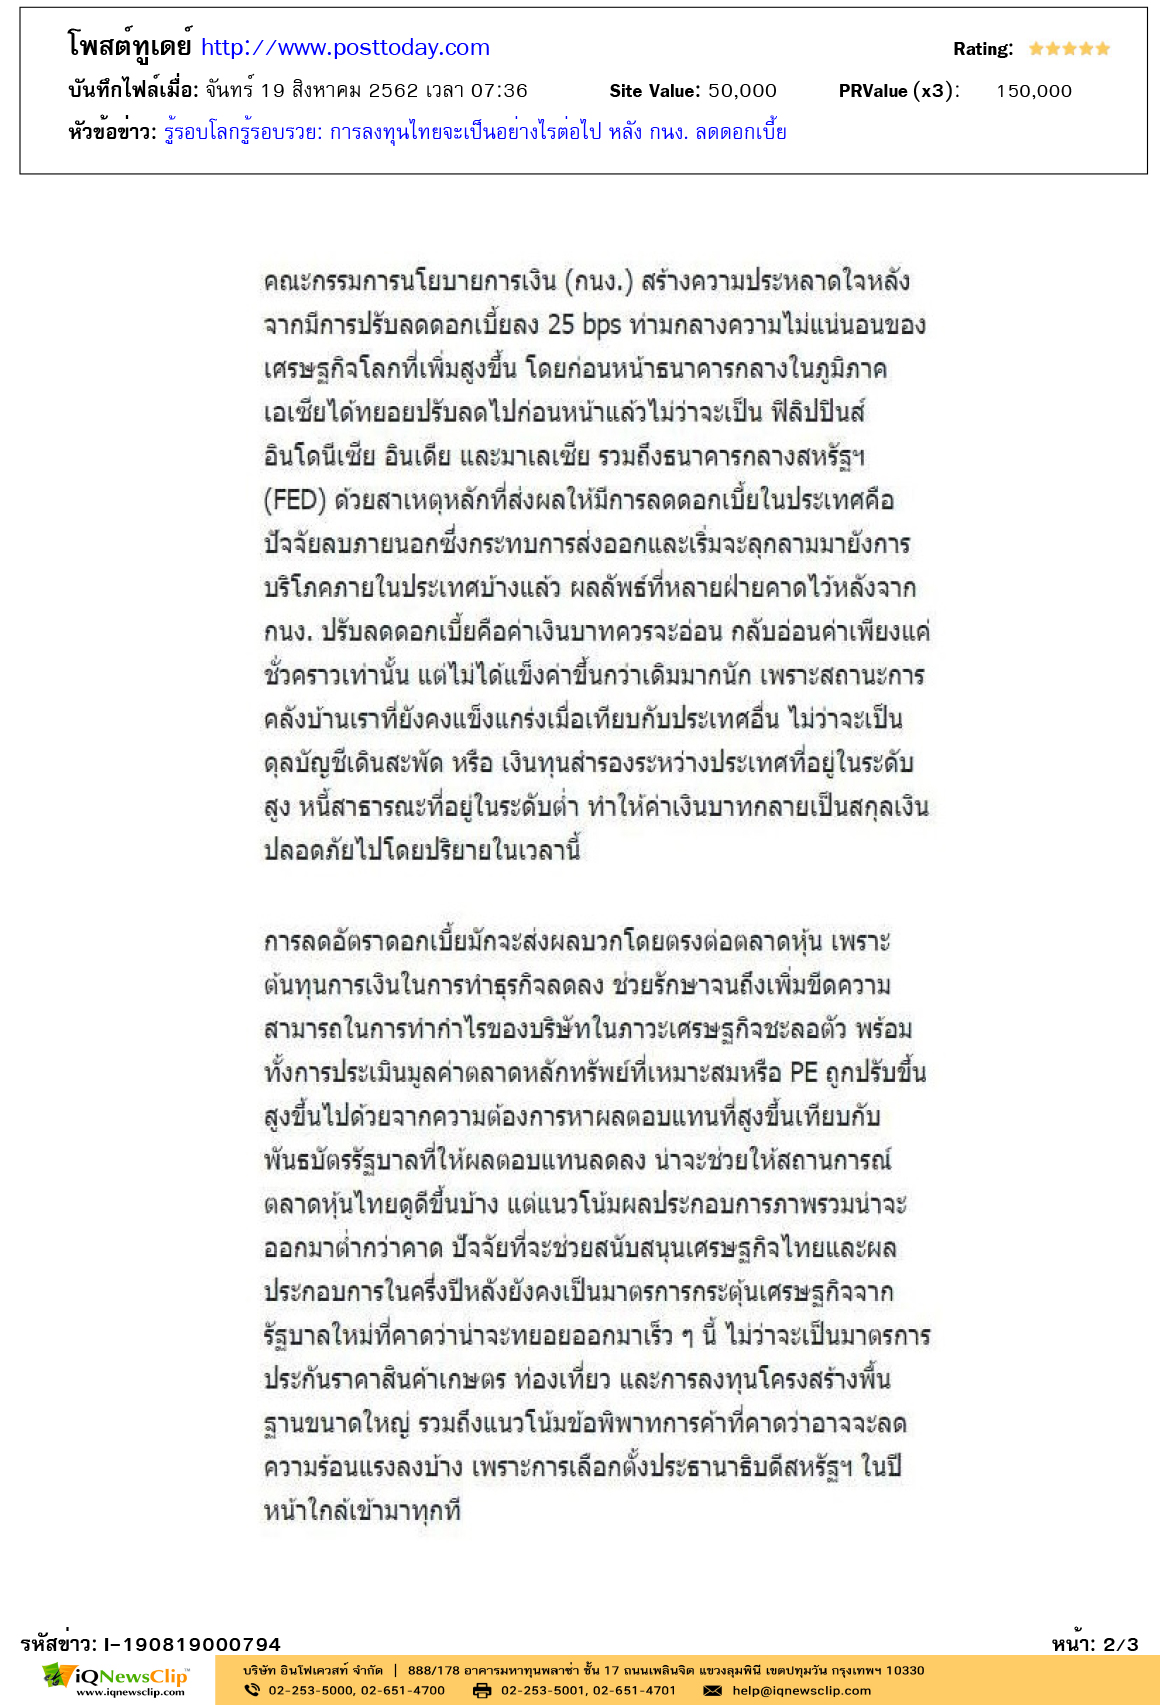 Other-โพสต์ทูเดย์--คอลัมน์-รู้รอบโลกรู้รอบรวย-การลงทุนไทยจะเป็นอย่างไรต่อไป2